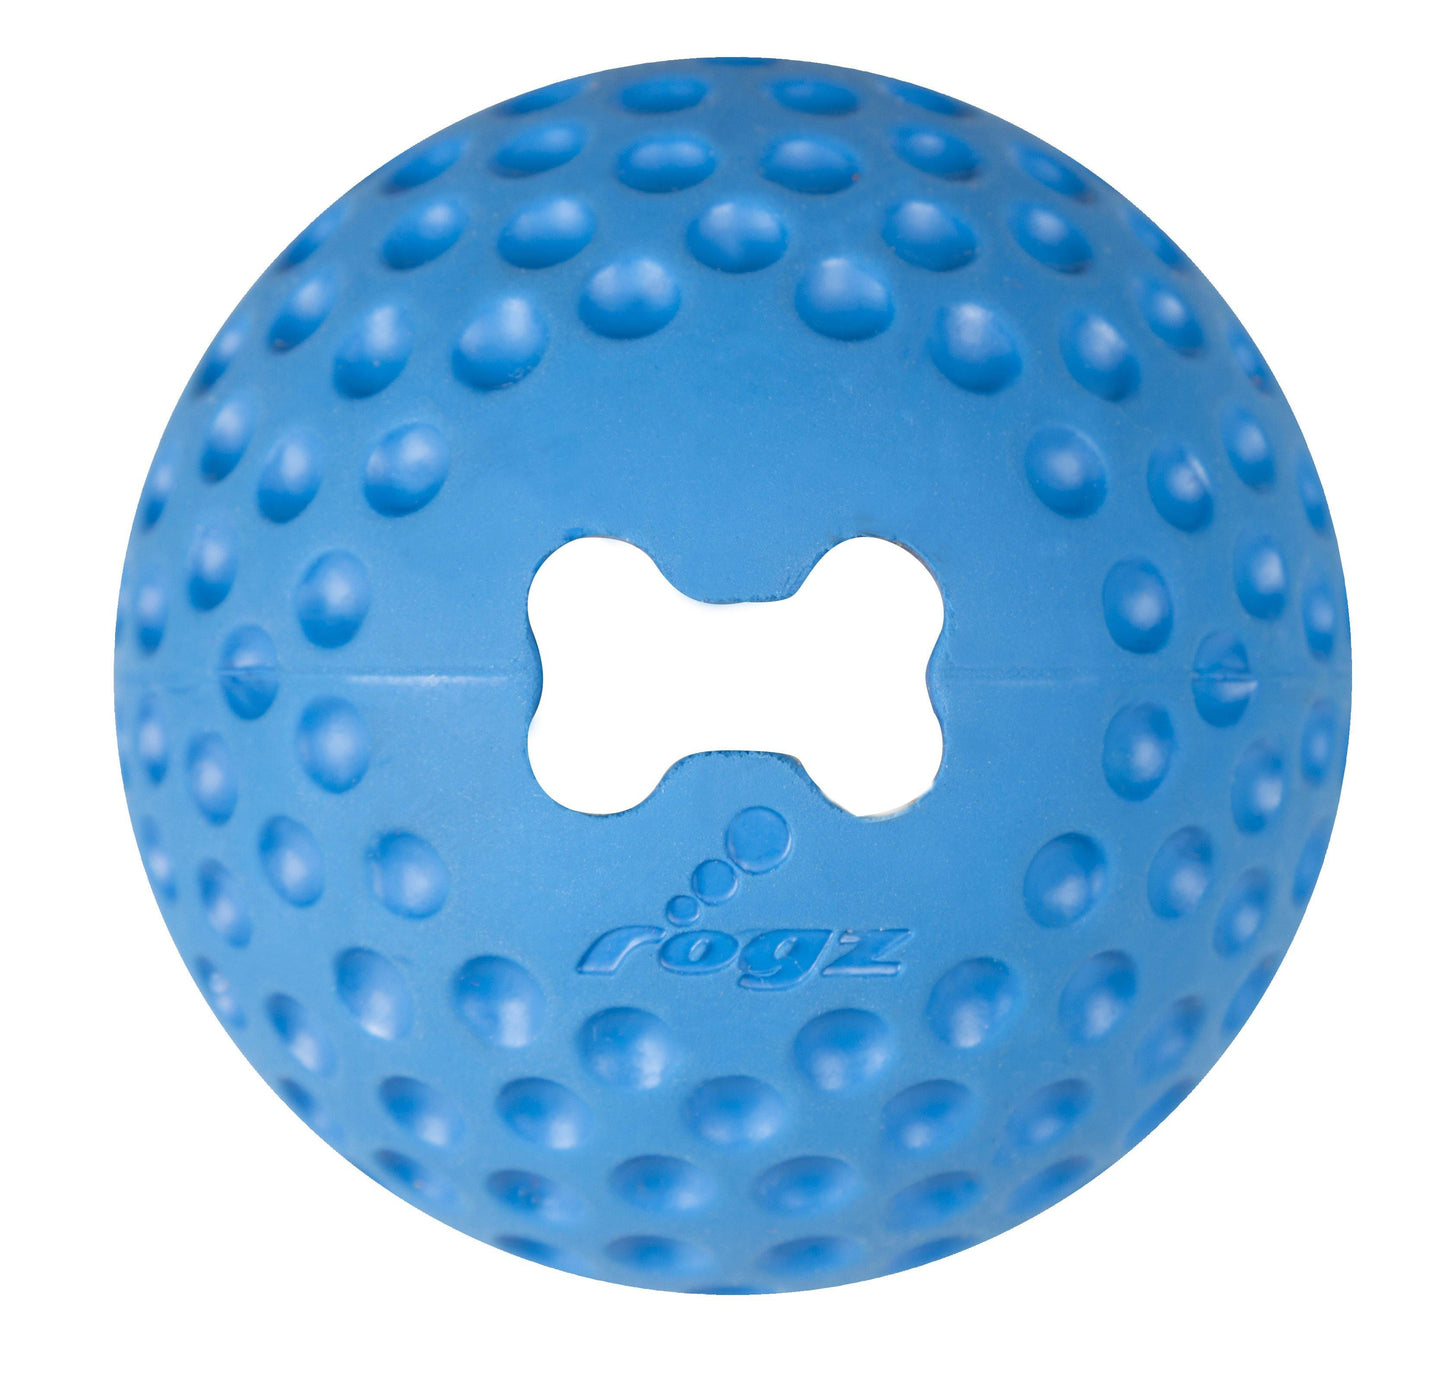 Rogz Gumz-balls Dog Toy - PetX - Online